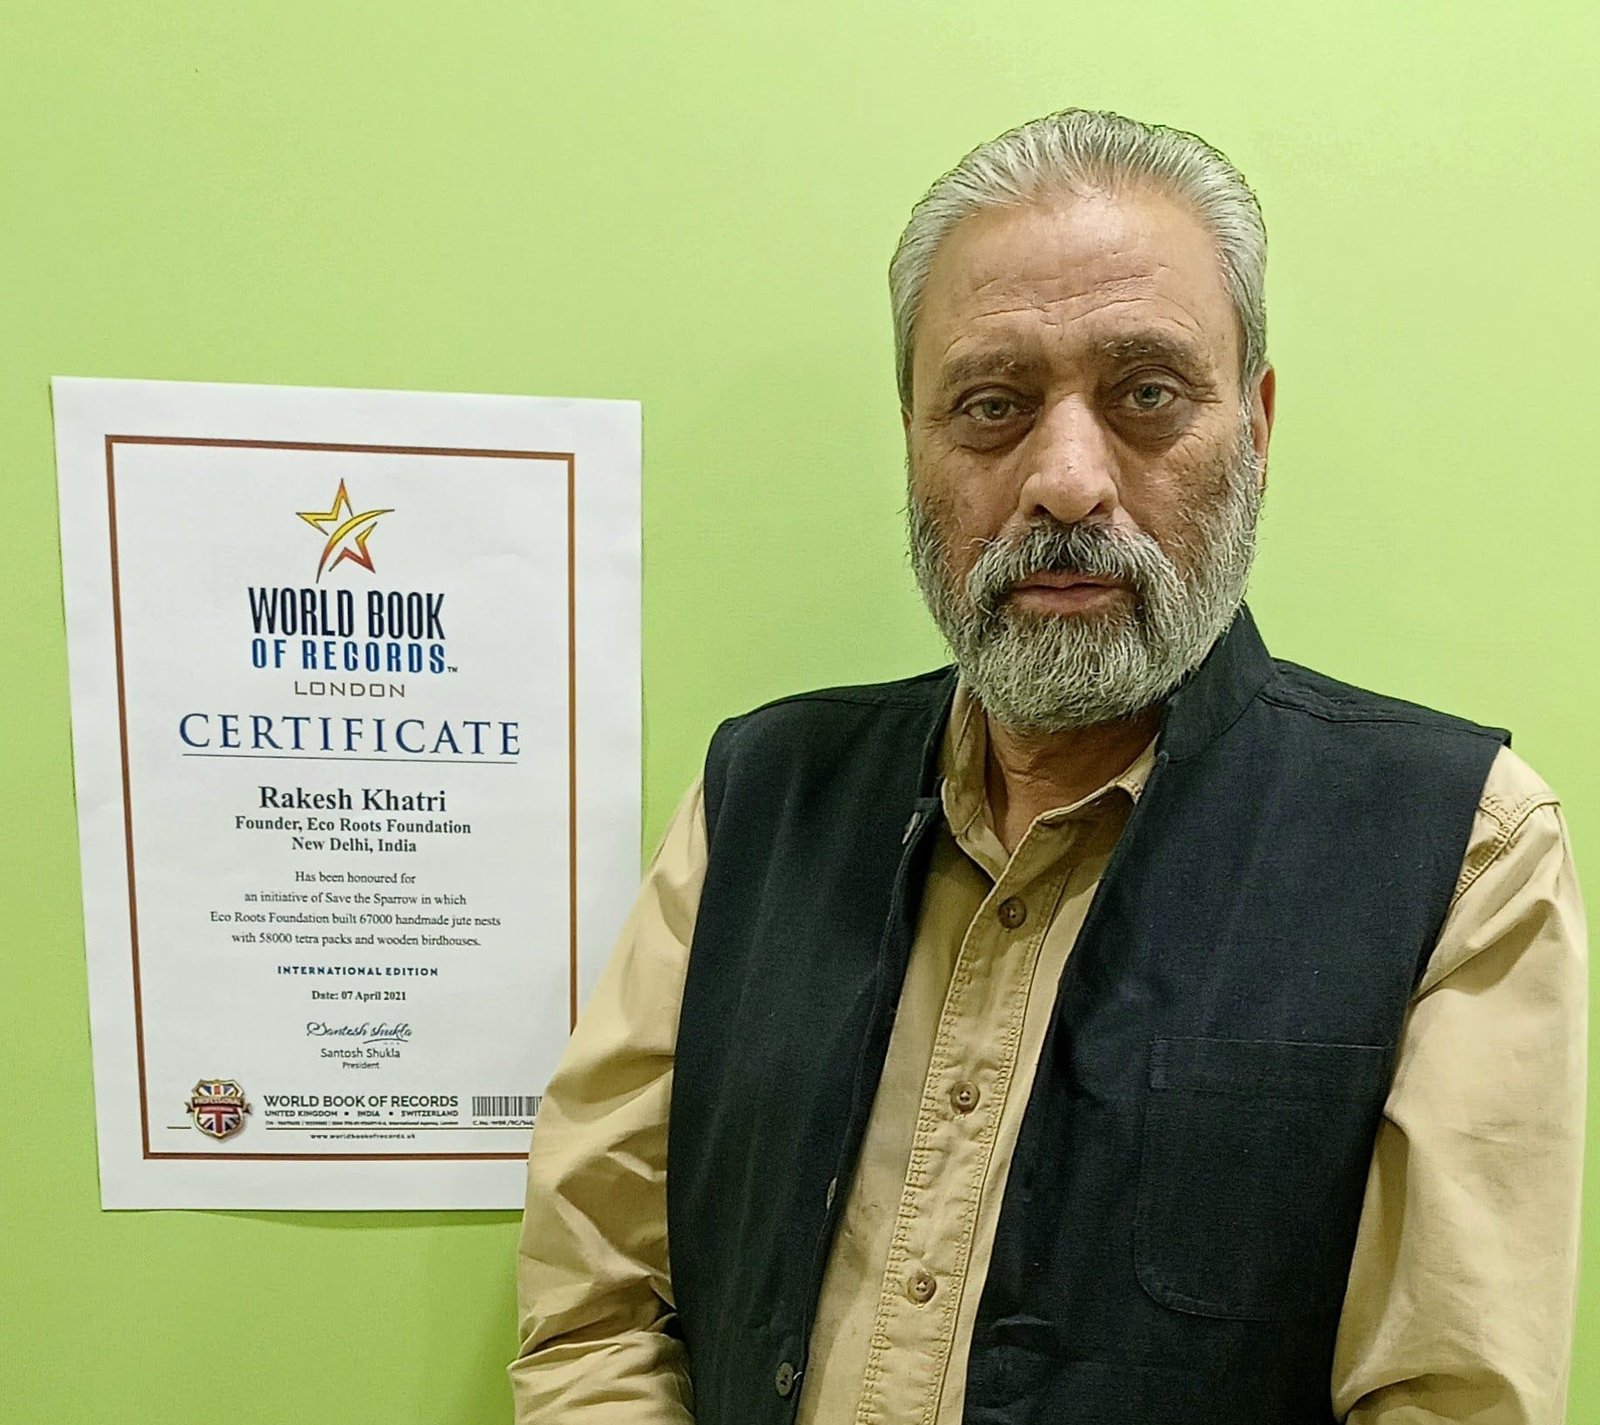 Rakesh Khatri